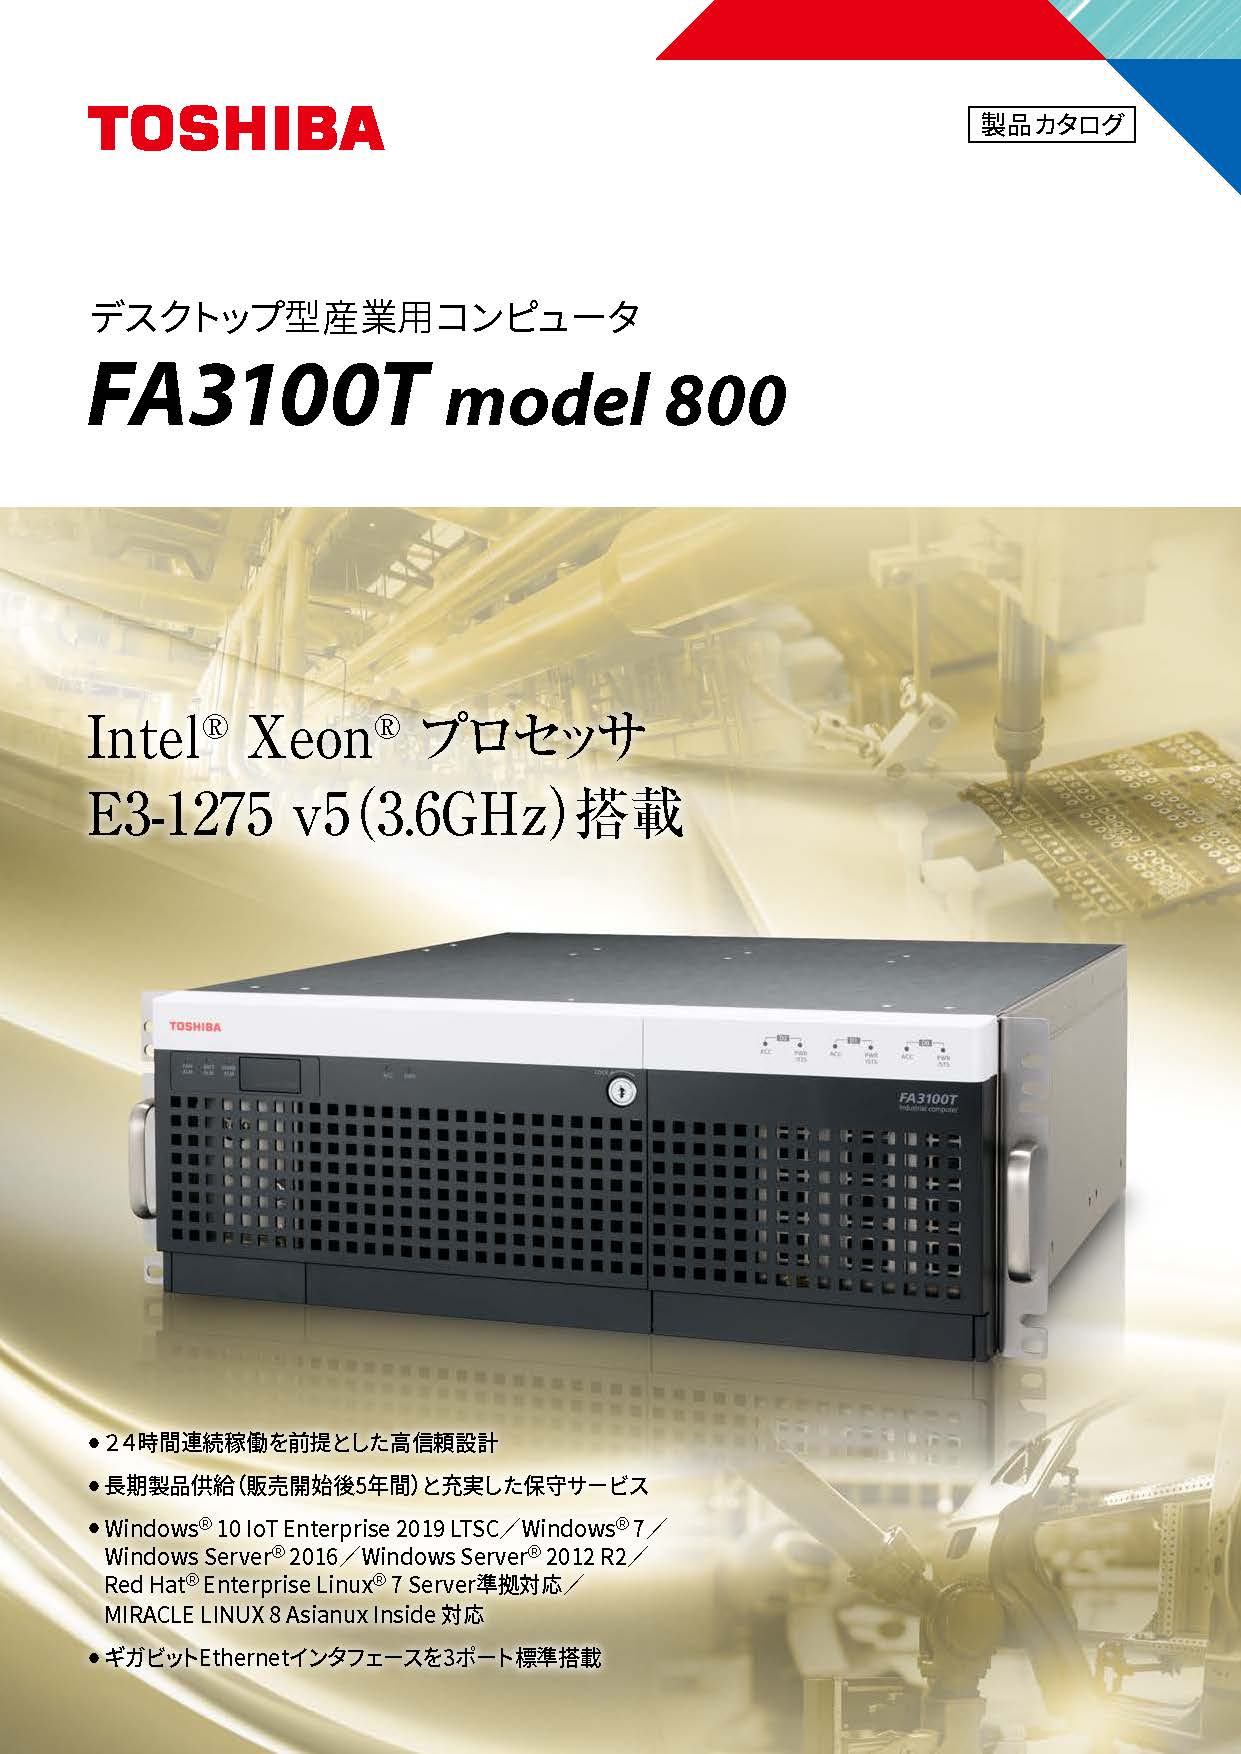 産業用コンピュータFA3100T model 800カタログ